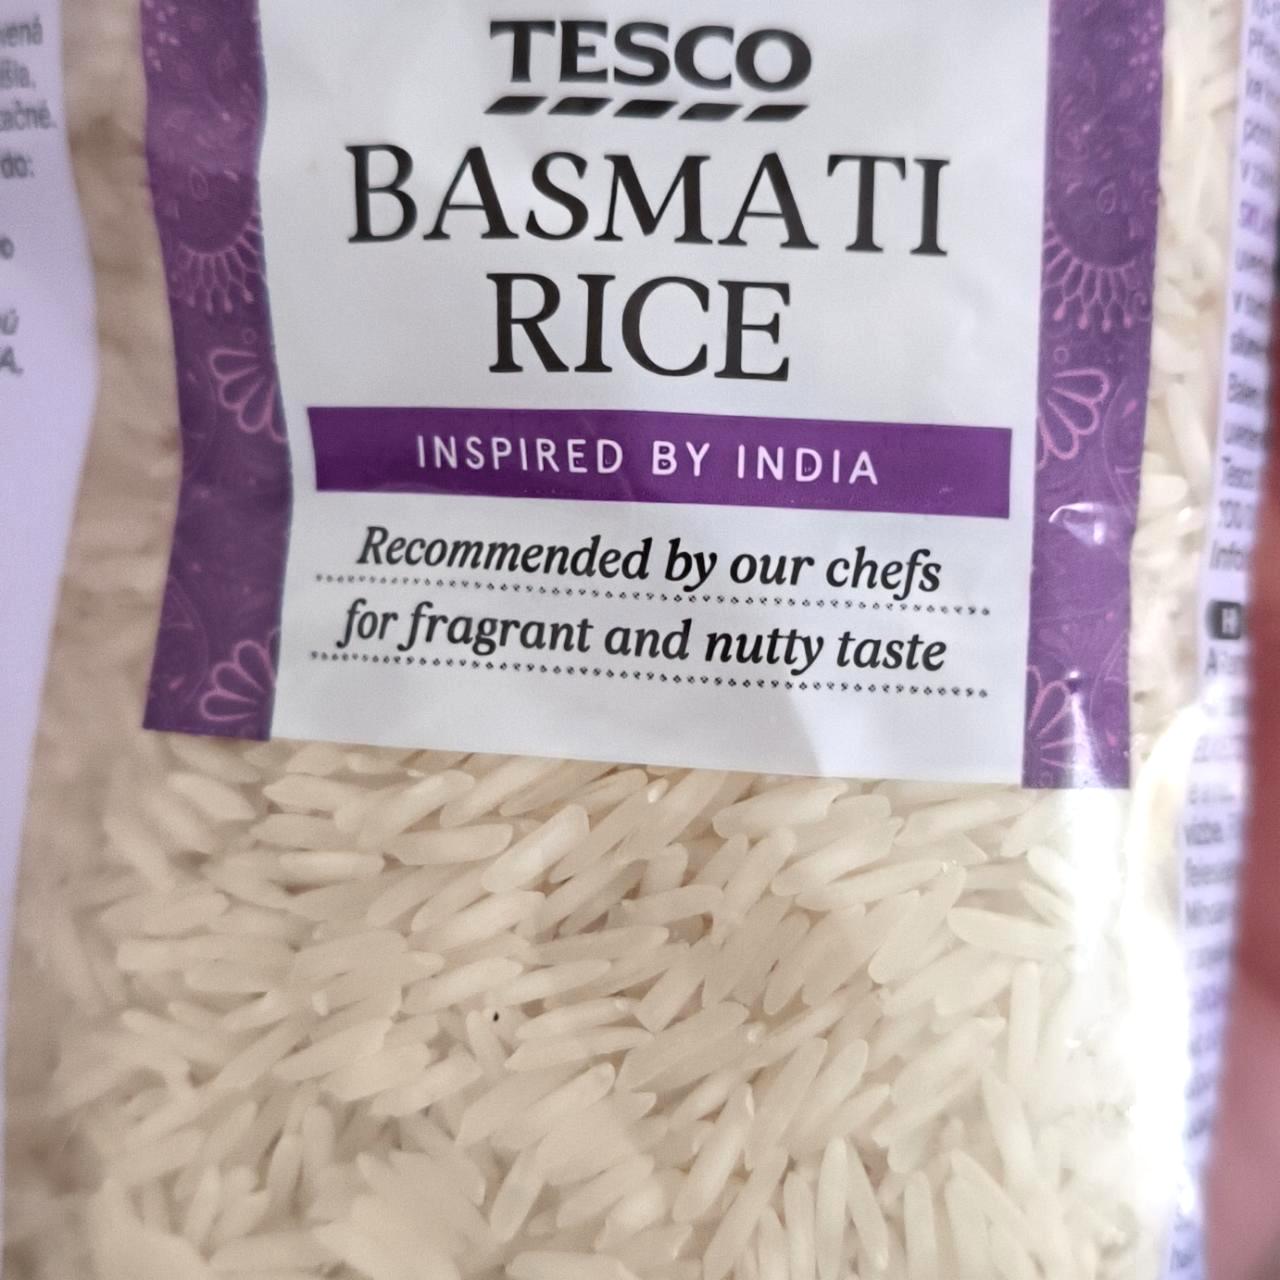 Képek - Basmati rice Tesco